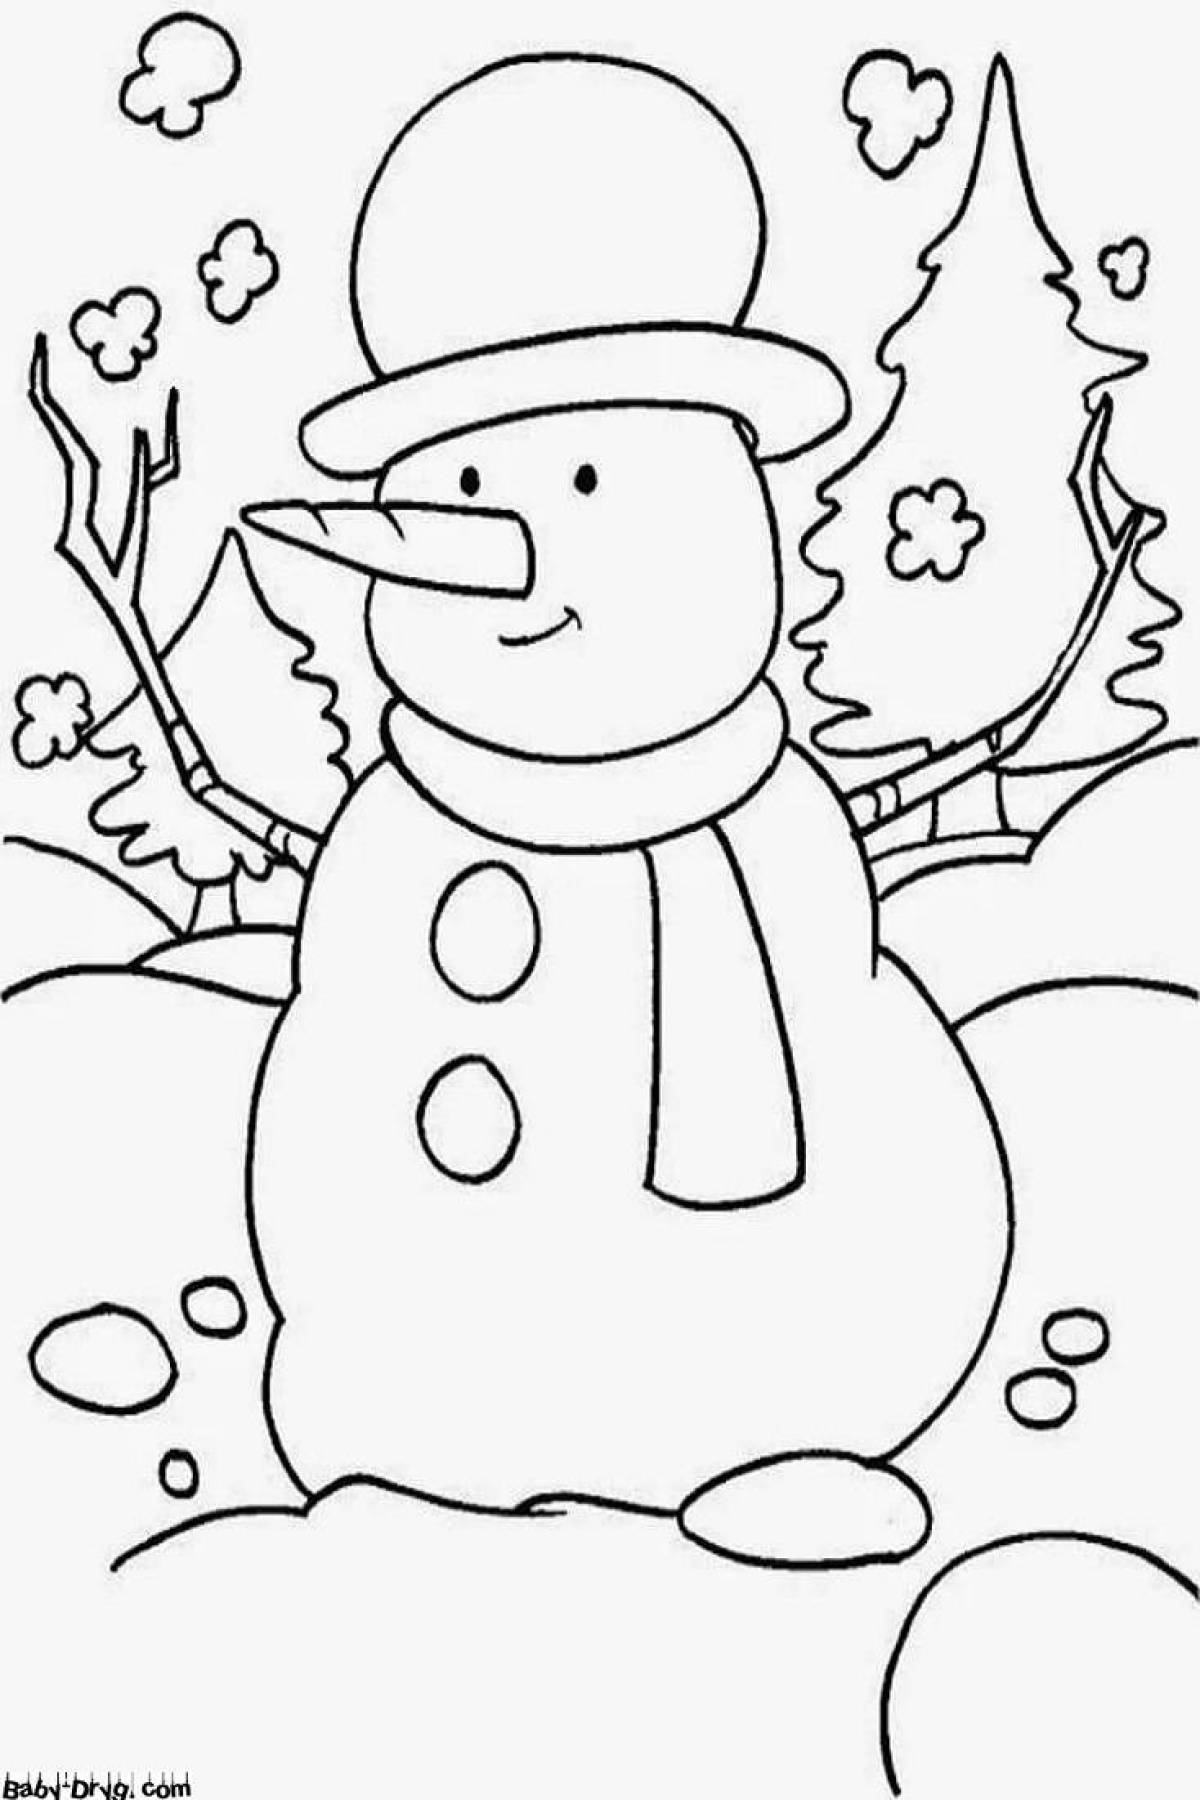 Playtime раскраска снеговик для детей